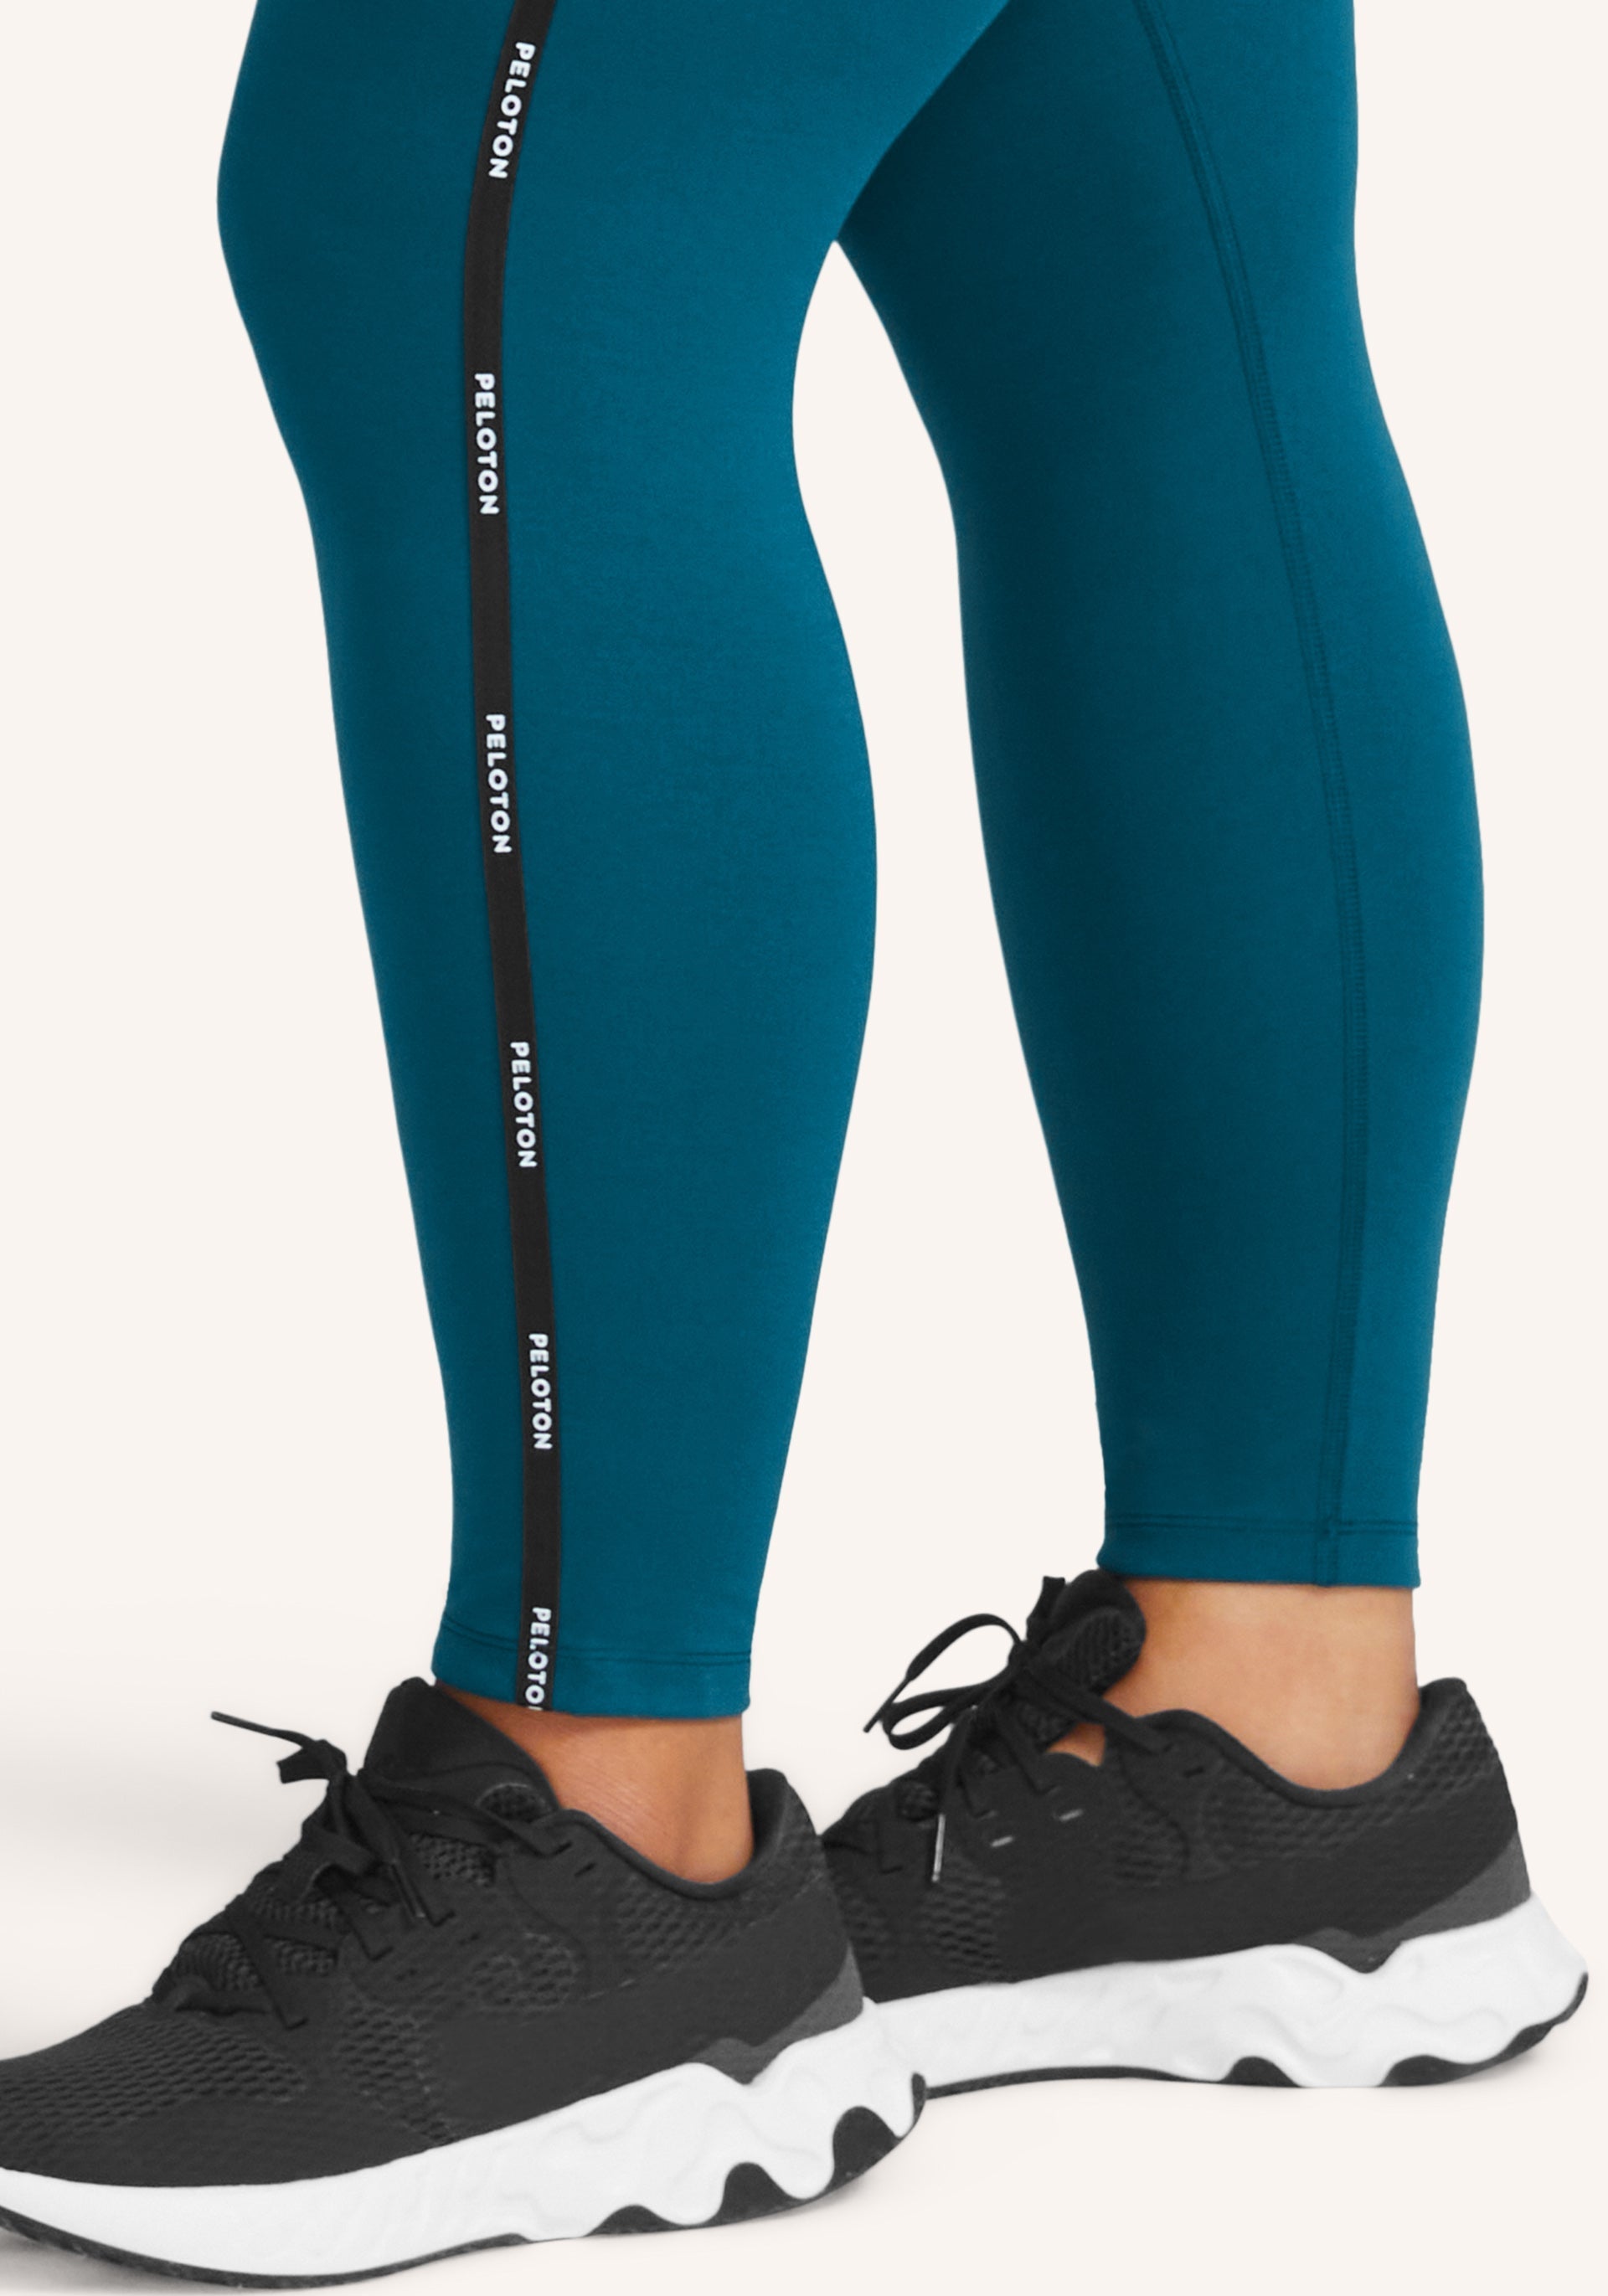 Peloton, Pants & Jumpsuits, Peloton Crop Women Leggings Size S New